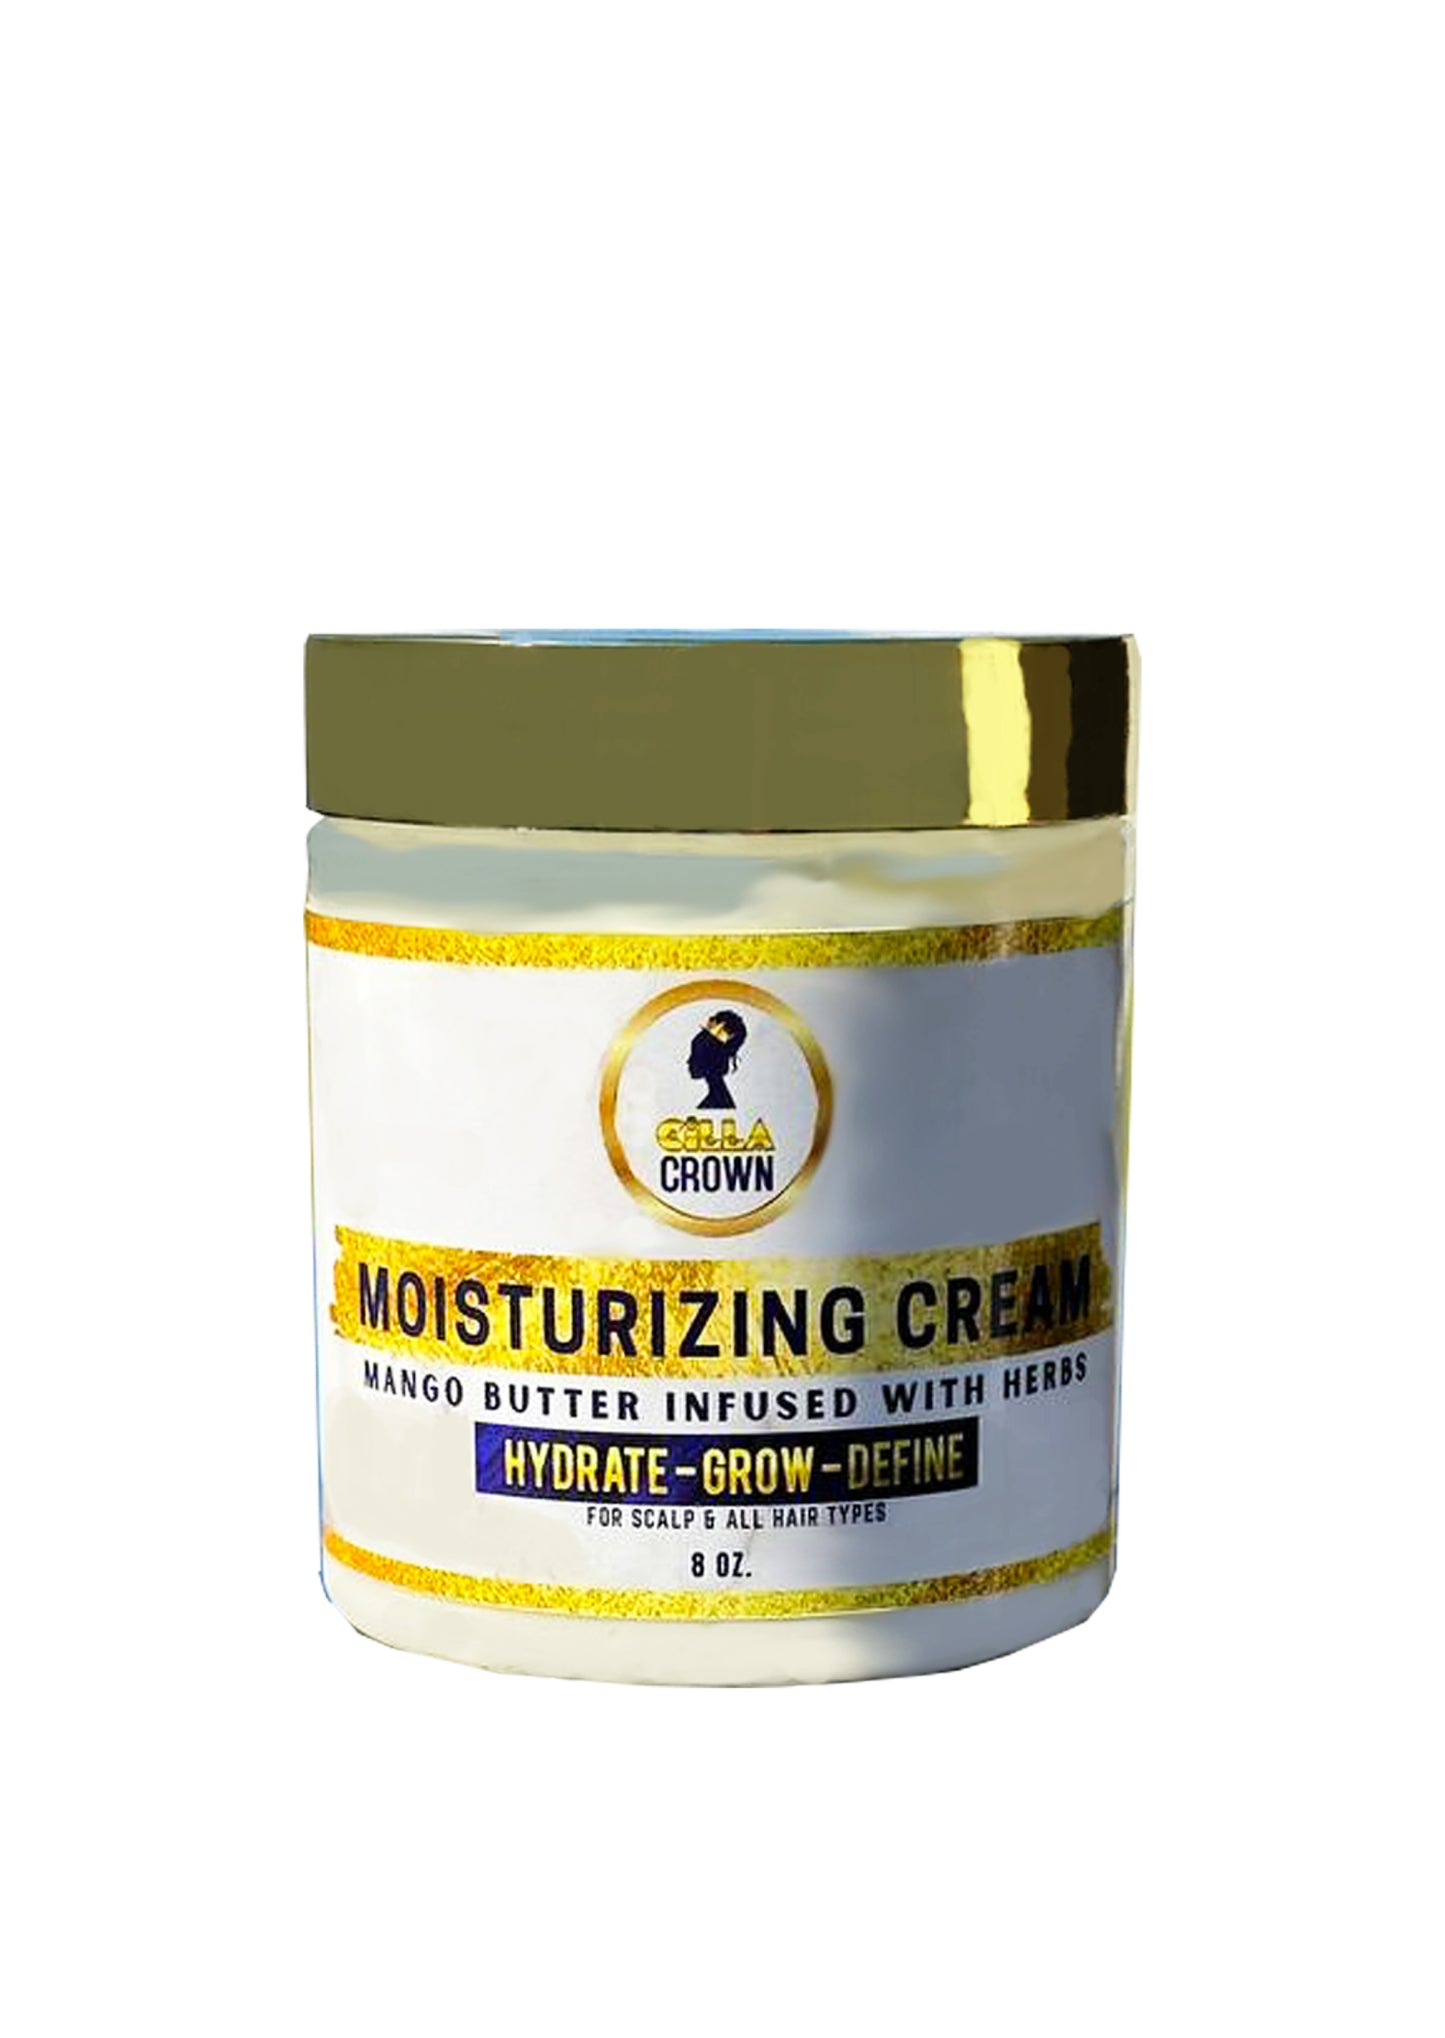 Moisturizing Hair Growth Cream